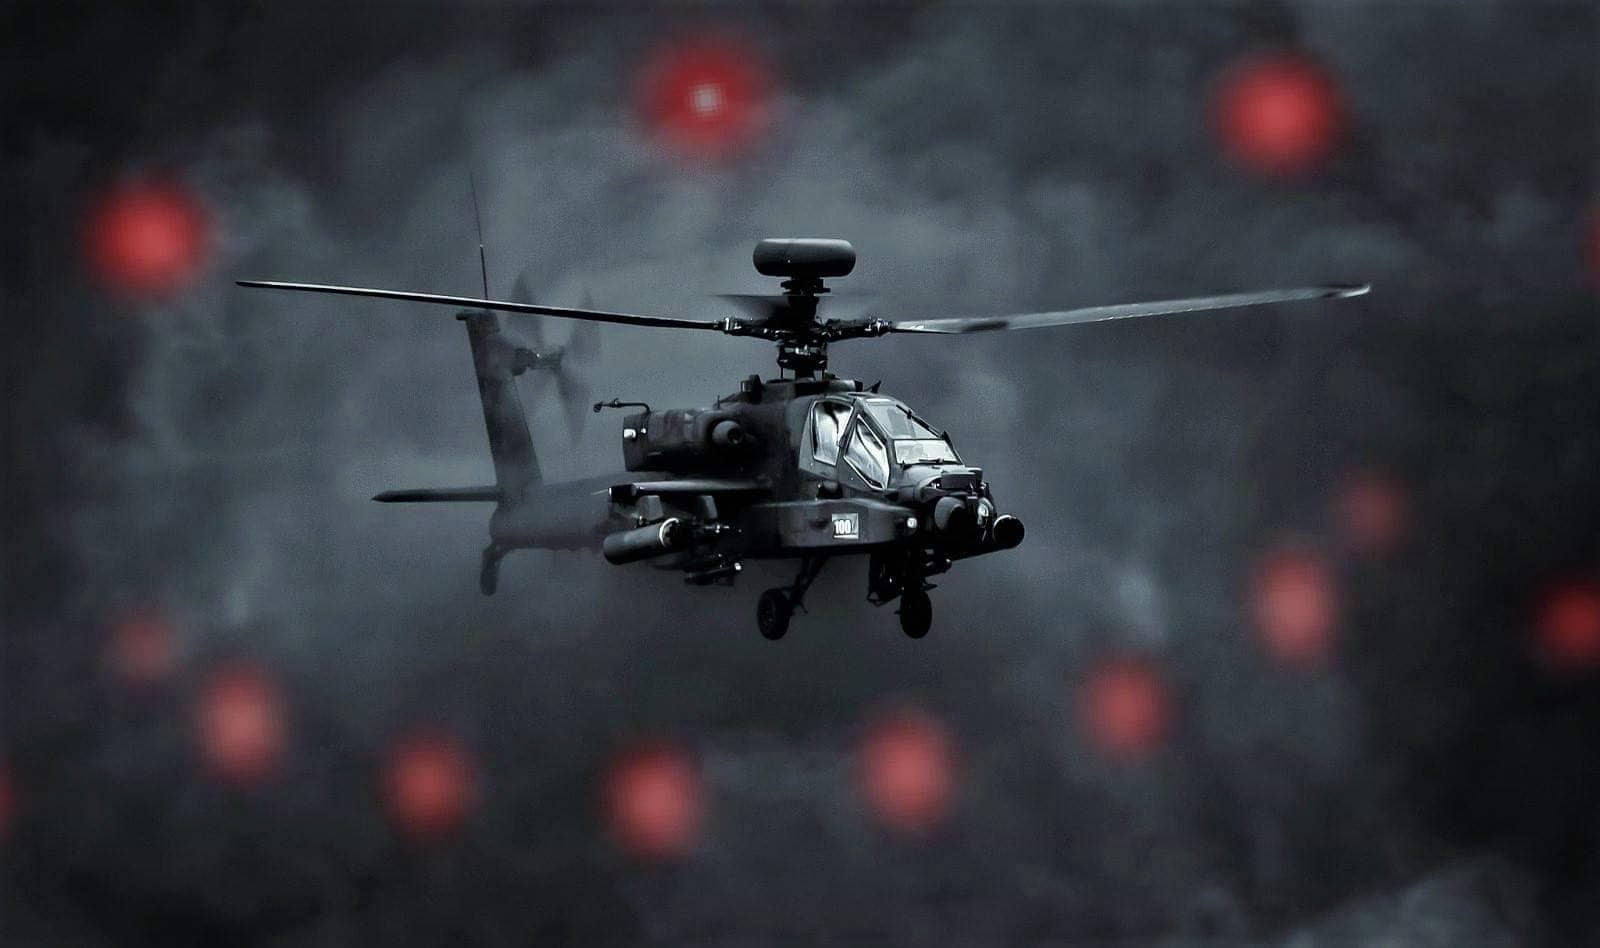 Helicópteros Negros: tecnología extraterrestre de alto secreto (Video)